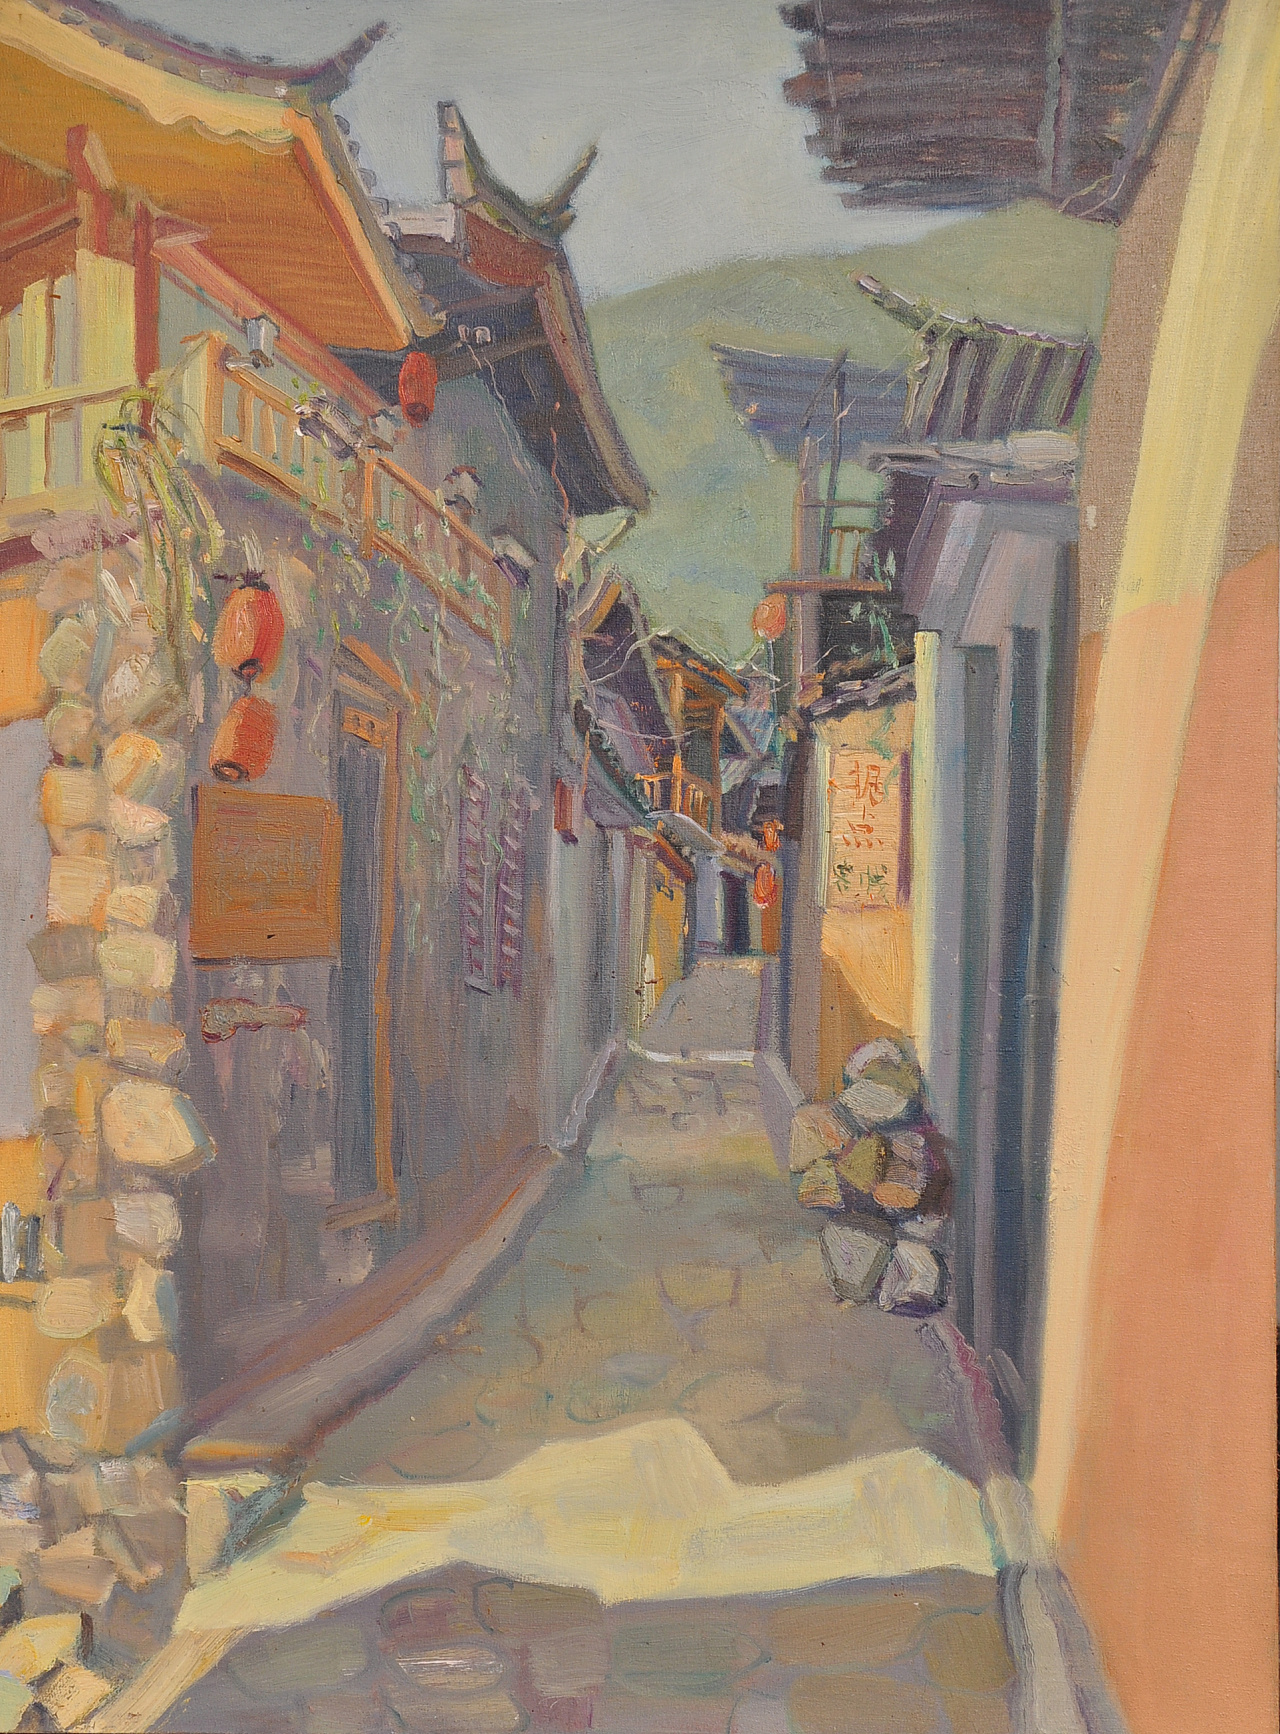 这张是在束河古镇的巷子旁边画得,清晨的阳光洒在房屋的两边,勾勒出一